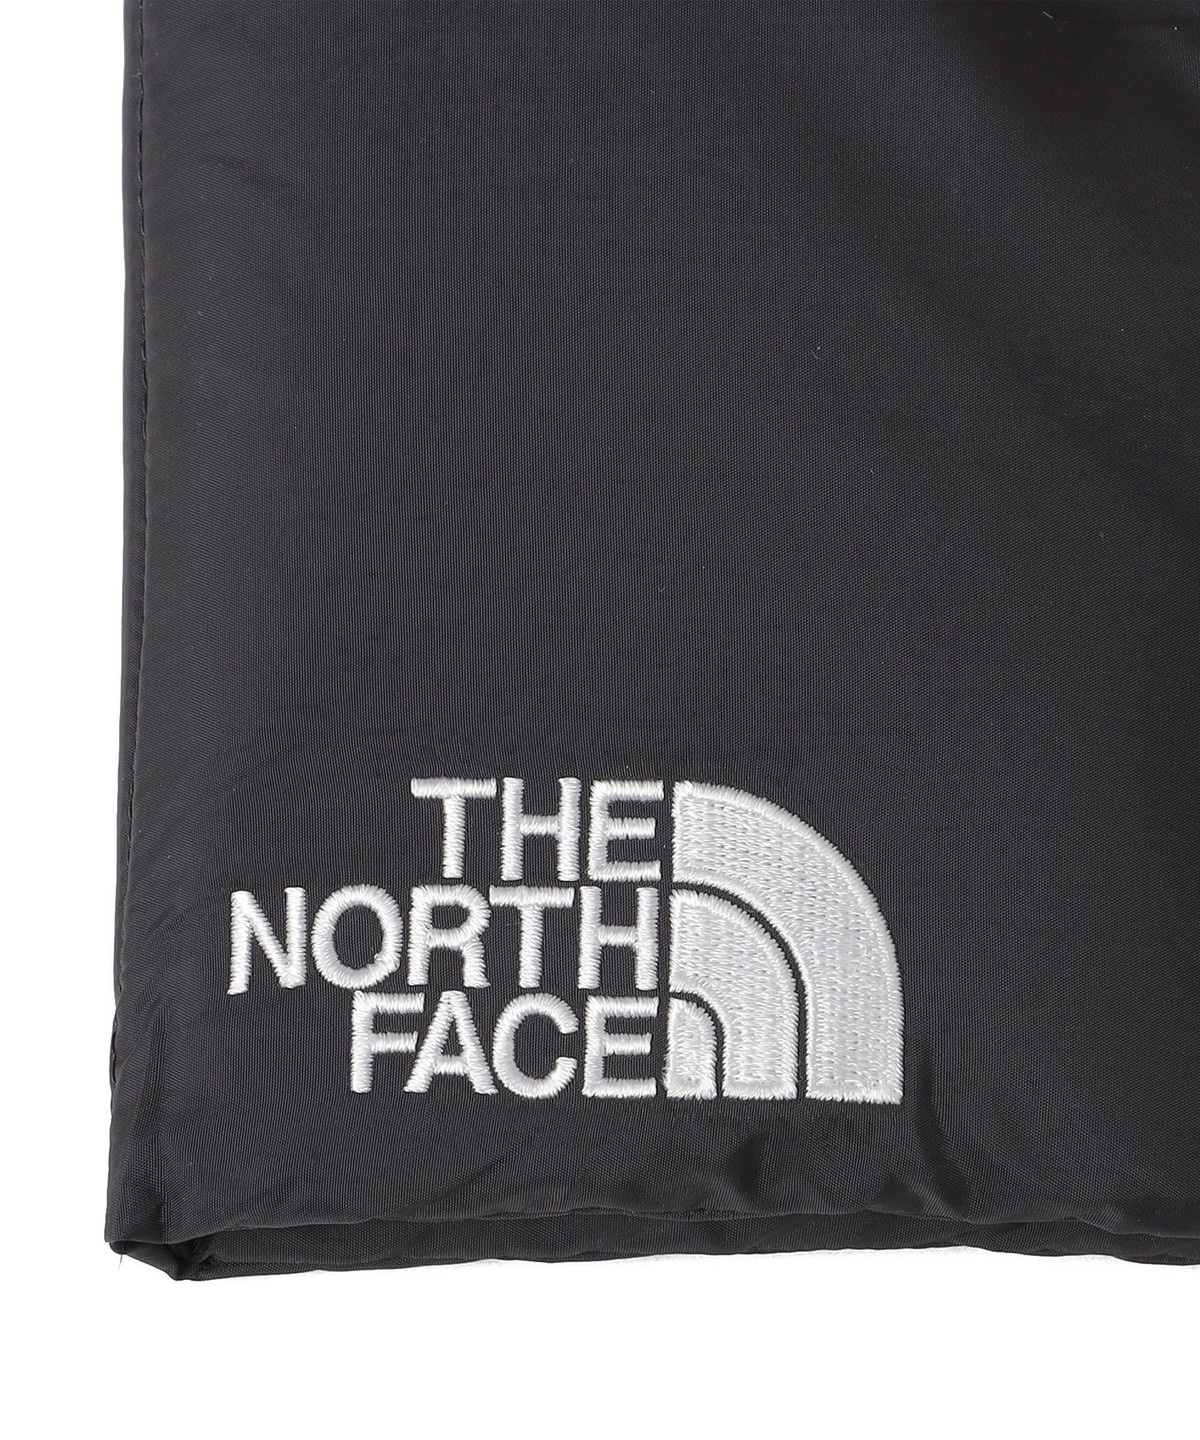 THE NORTH FACE:ヌプシ マフラー: ストール/マフラー/スカーフ SHIPS